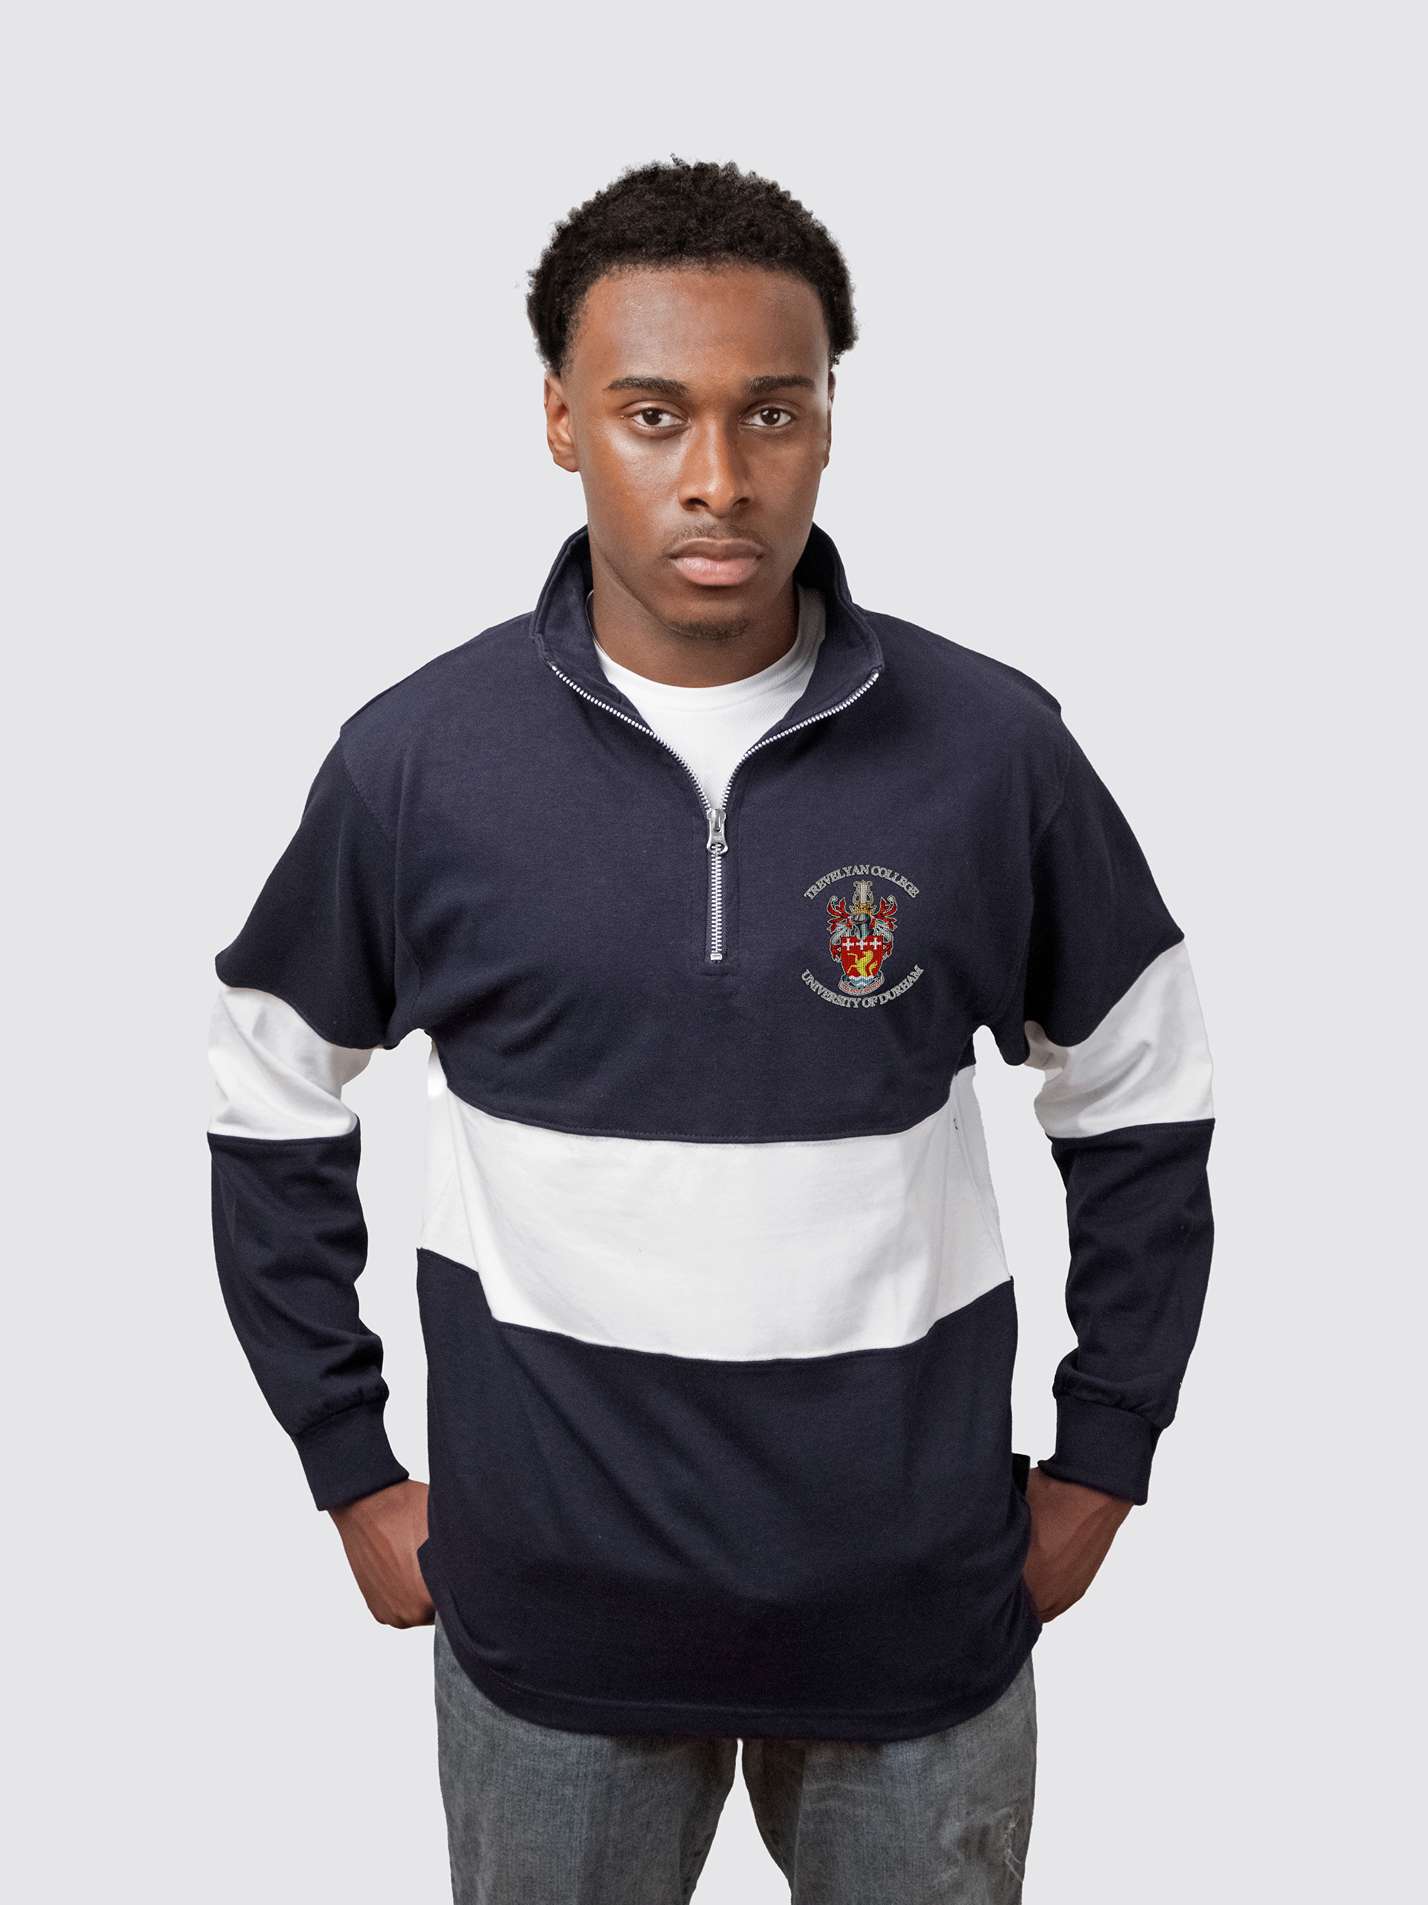 Trevelyan College Durham Unisex Panelled 1/4 Zip Sweatshirt